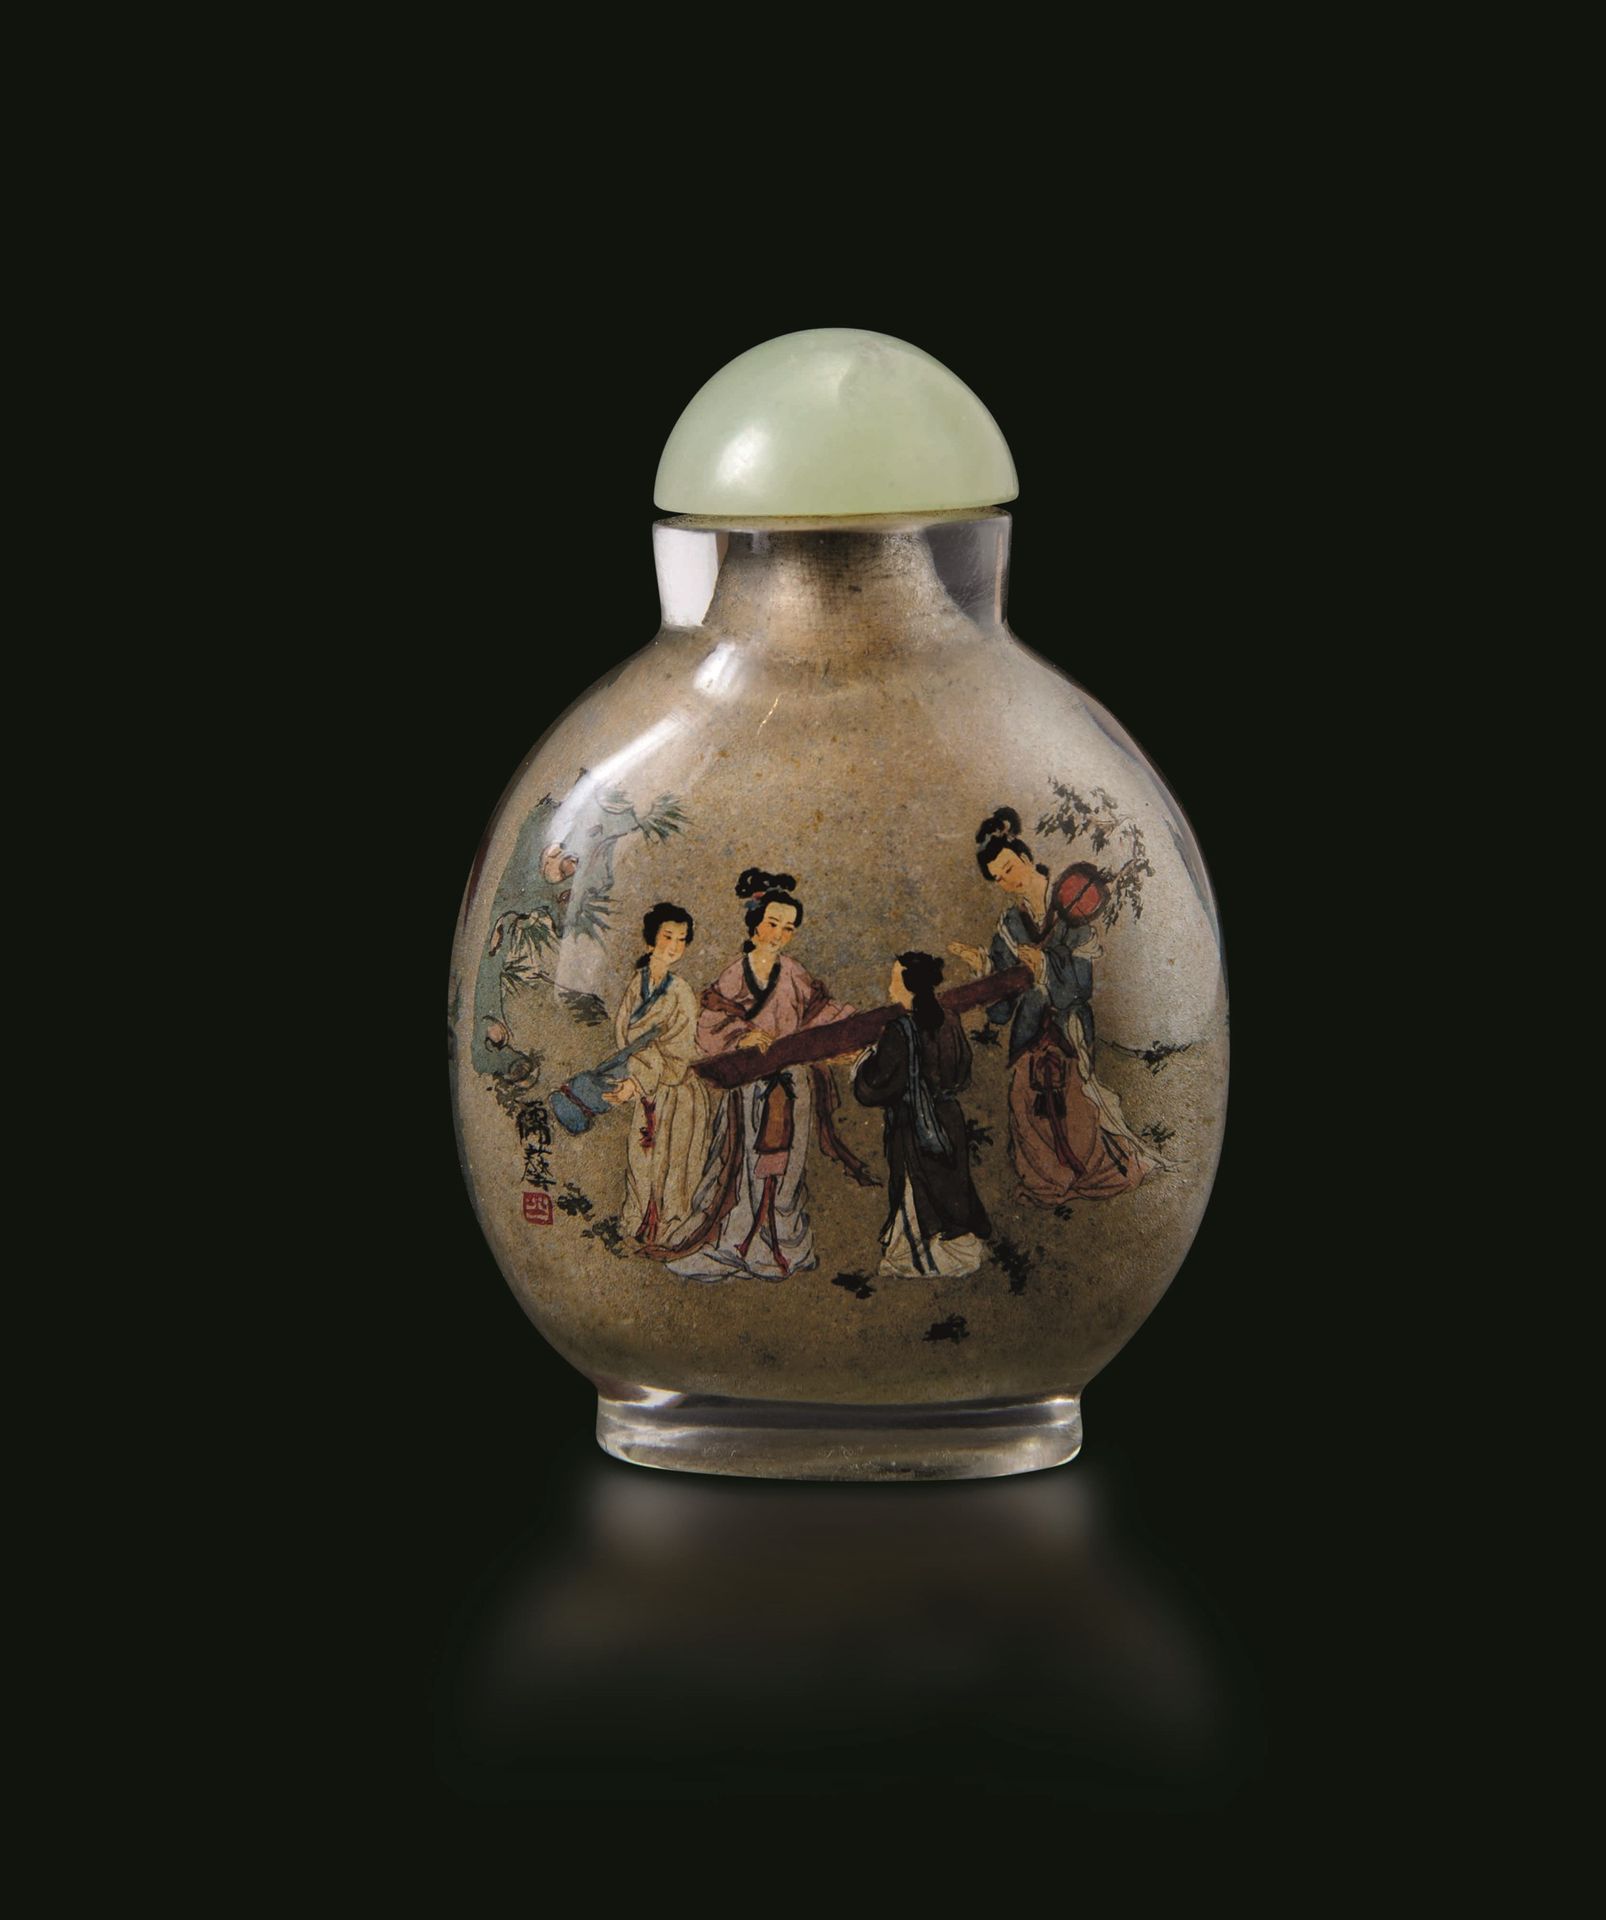 A glass snuff bottle, China, Republic, 1900s H 6cm